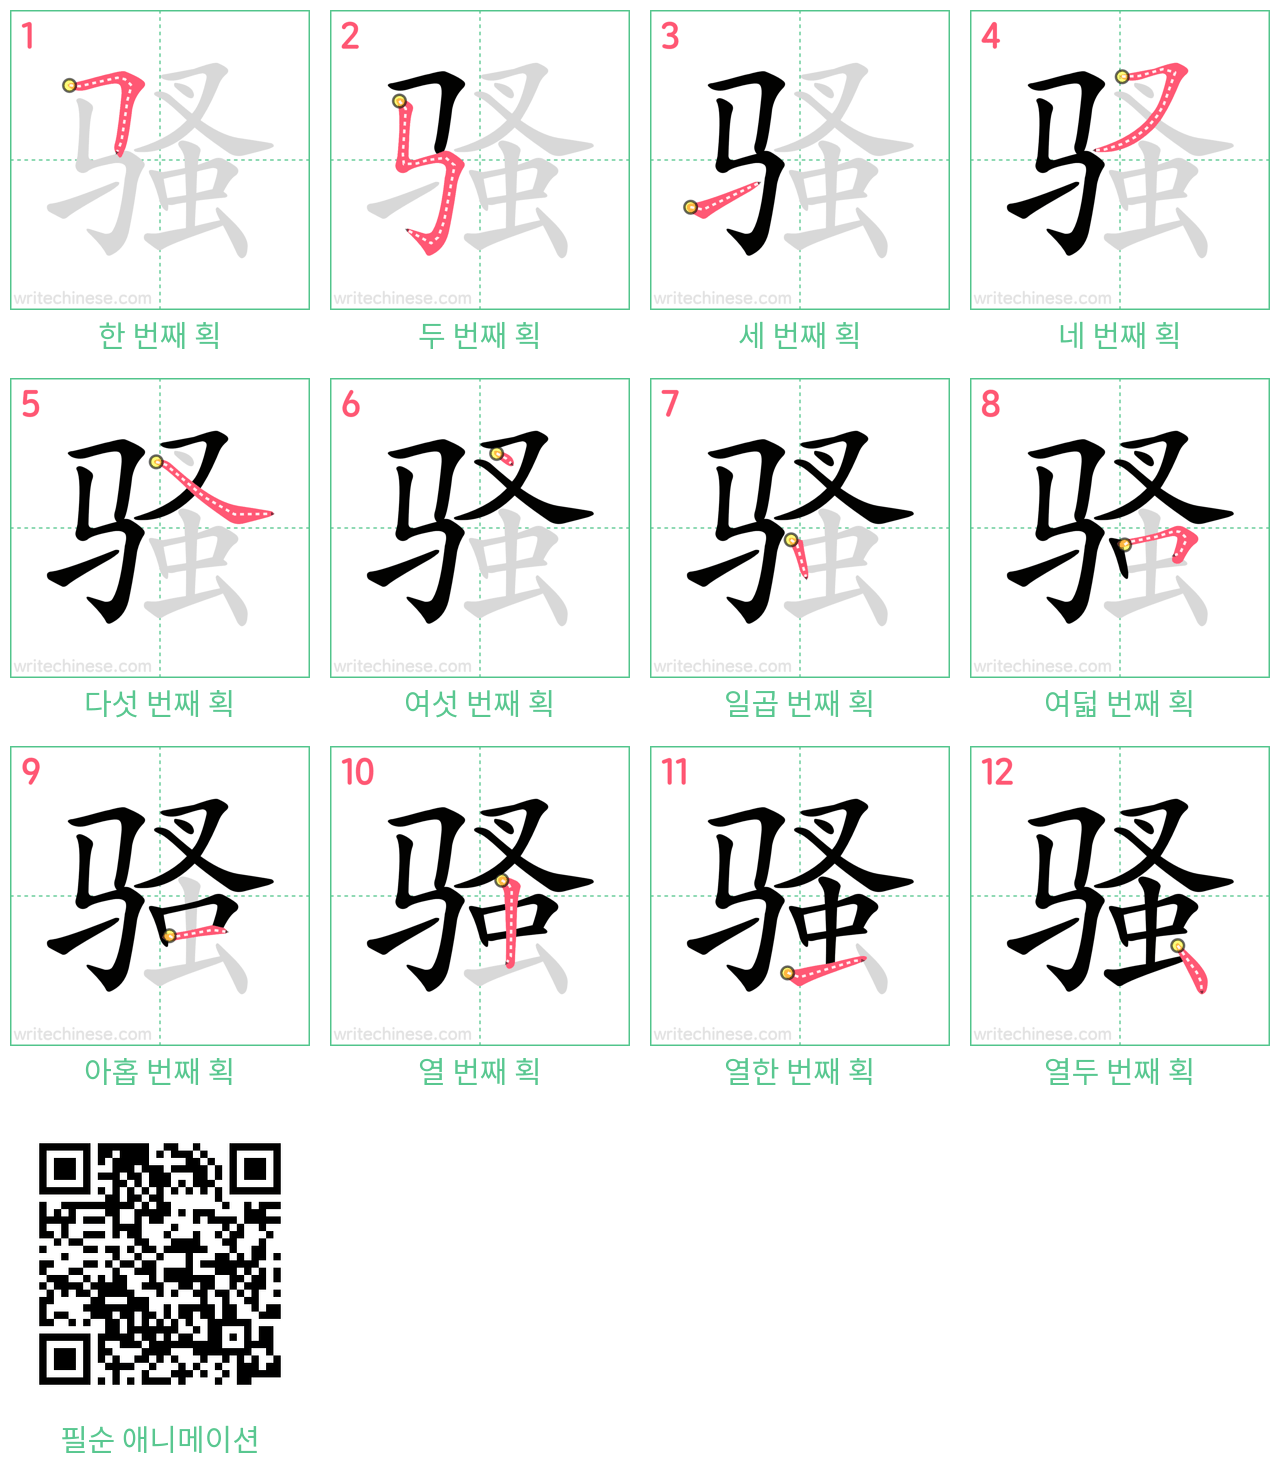 骚 step-by-step stroke order diagrams